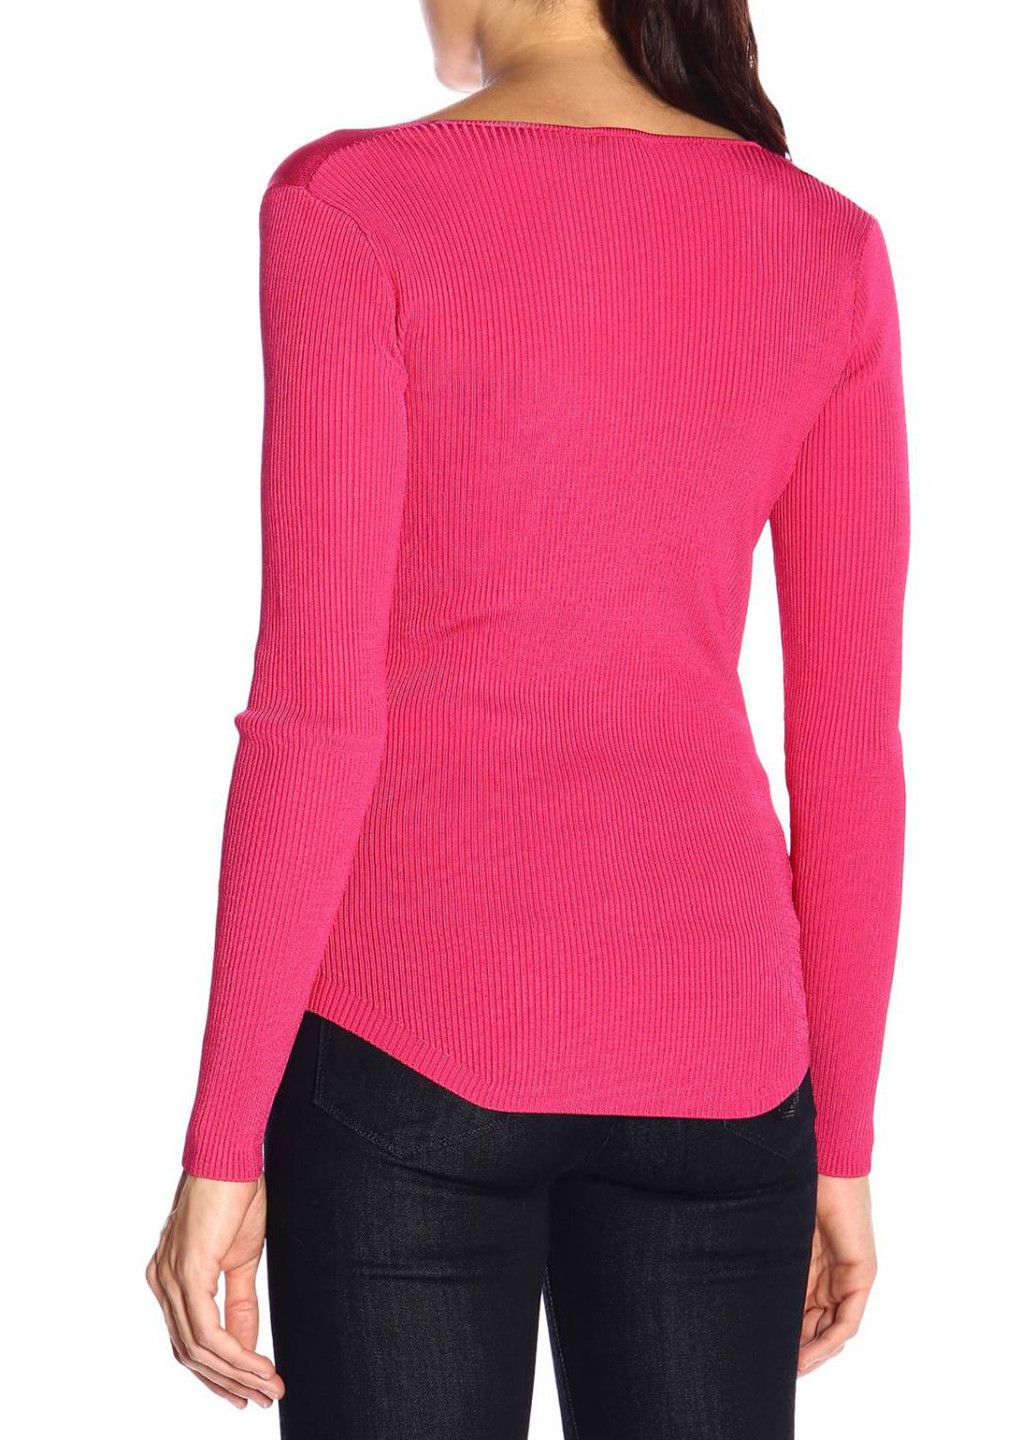 Малиновый демисезонный пуловер пуловер Pinko